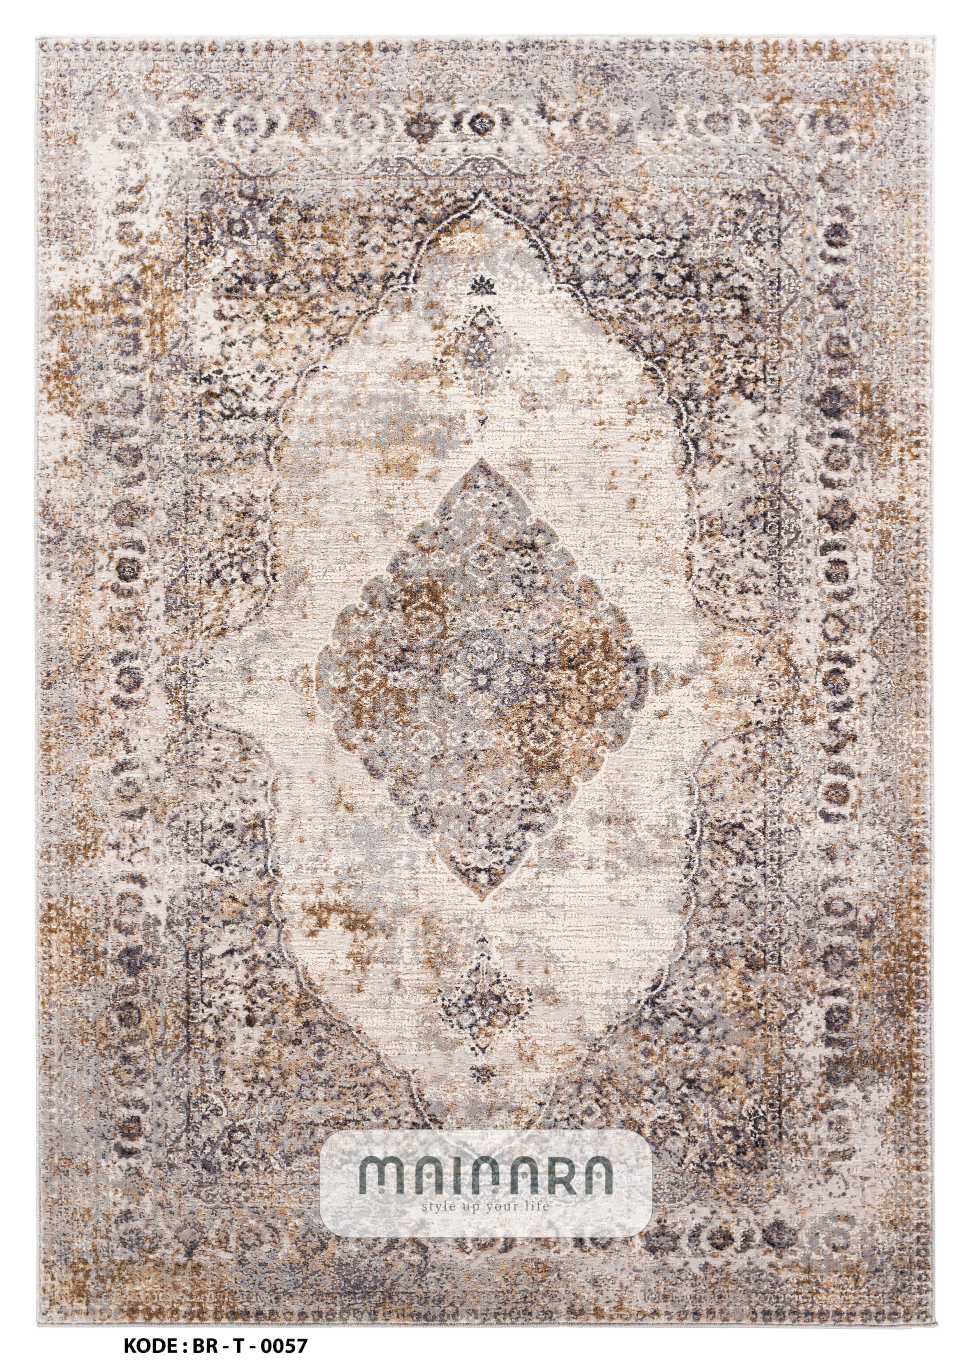 Karpet Tradisional (BR-T-0057) - Brown,Cream,Orange